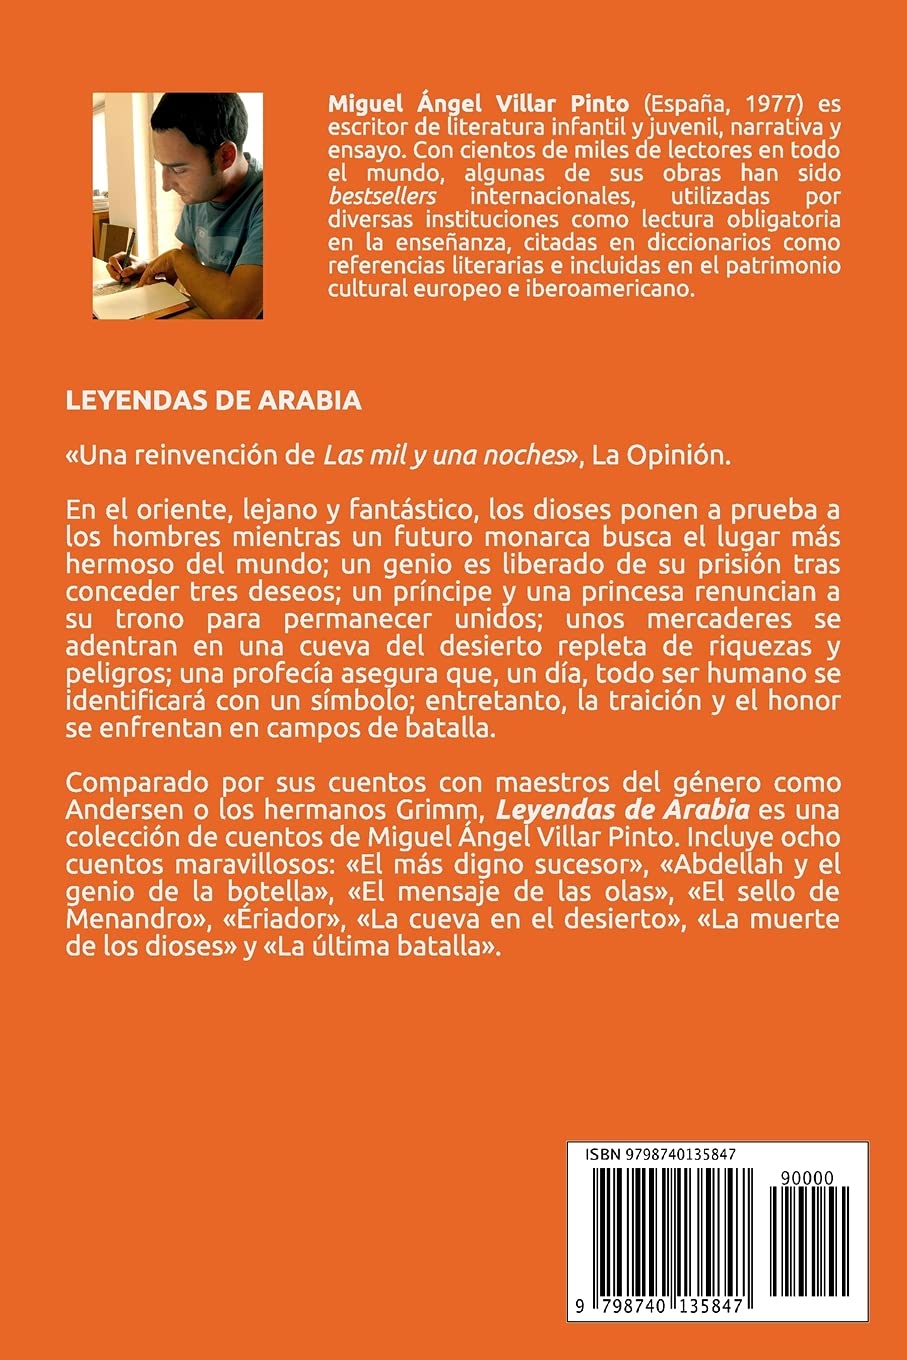 Leyendas de Arabia (Cuentos Maravillosos) (Spanish Edition)